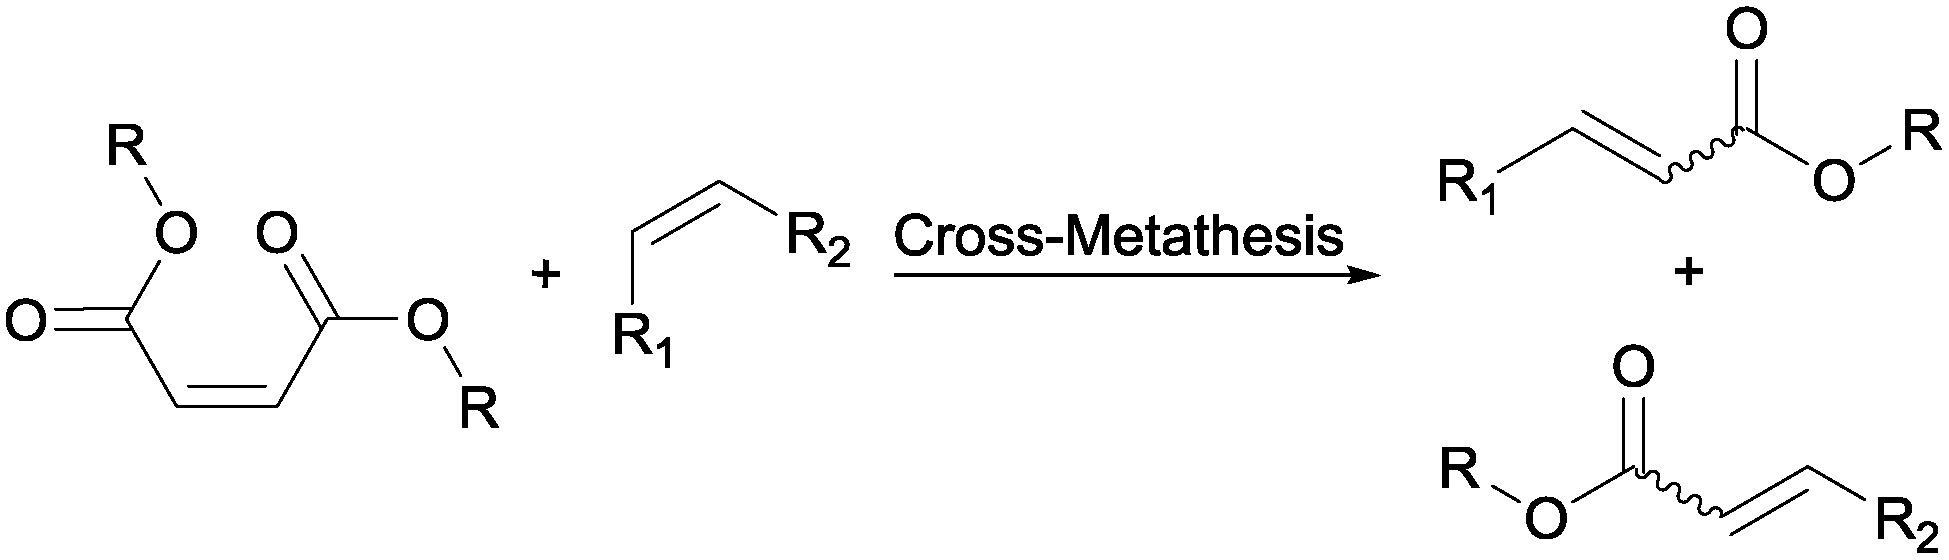 Cross metathesis acrylate